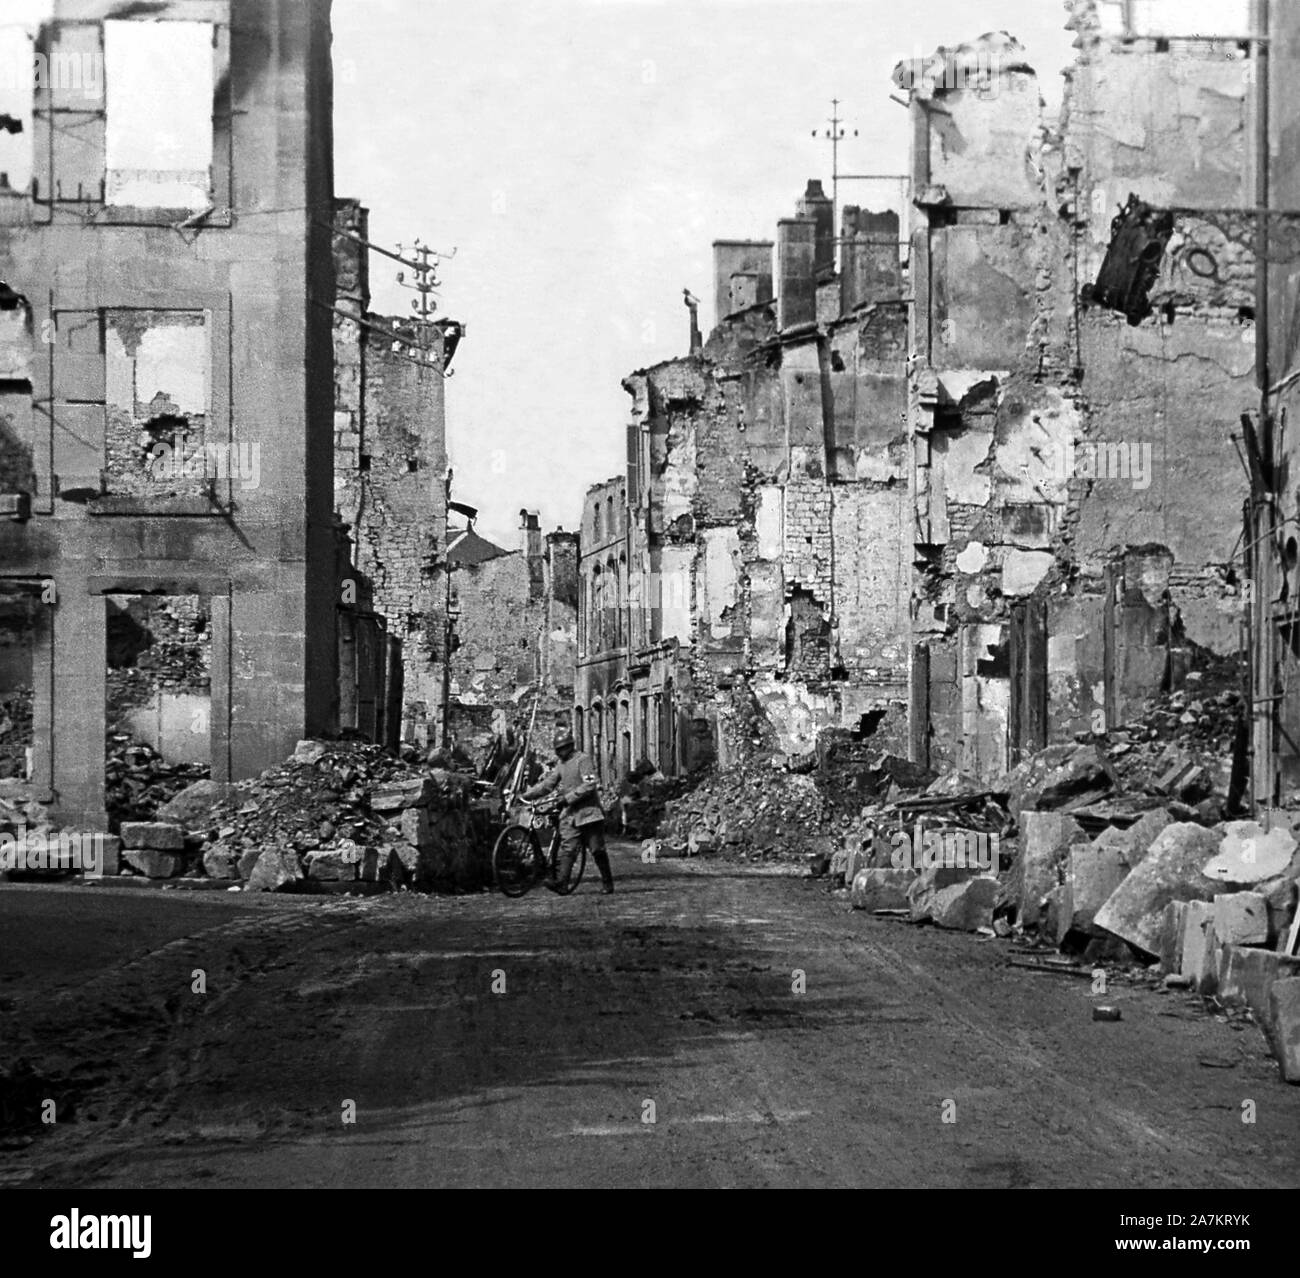 Premiere Guerre Mondiale, vue des ruines de la rue Saint Pierre a Verdun, apres les bombardements. Photographie, 1914-1918, Paris. Stock Photo